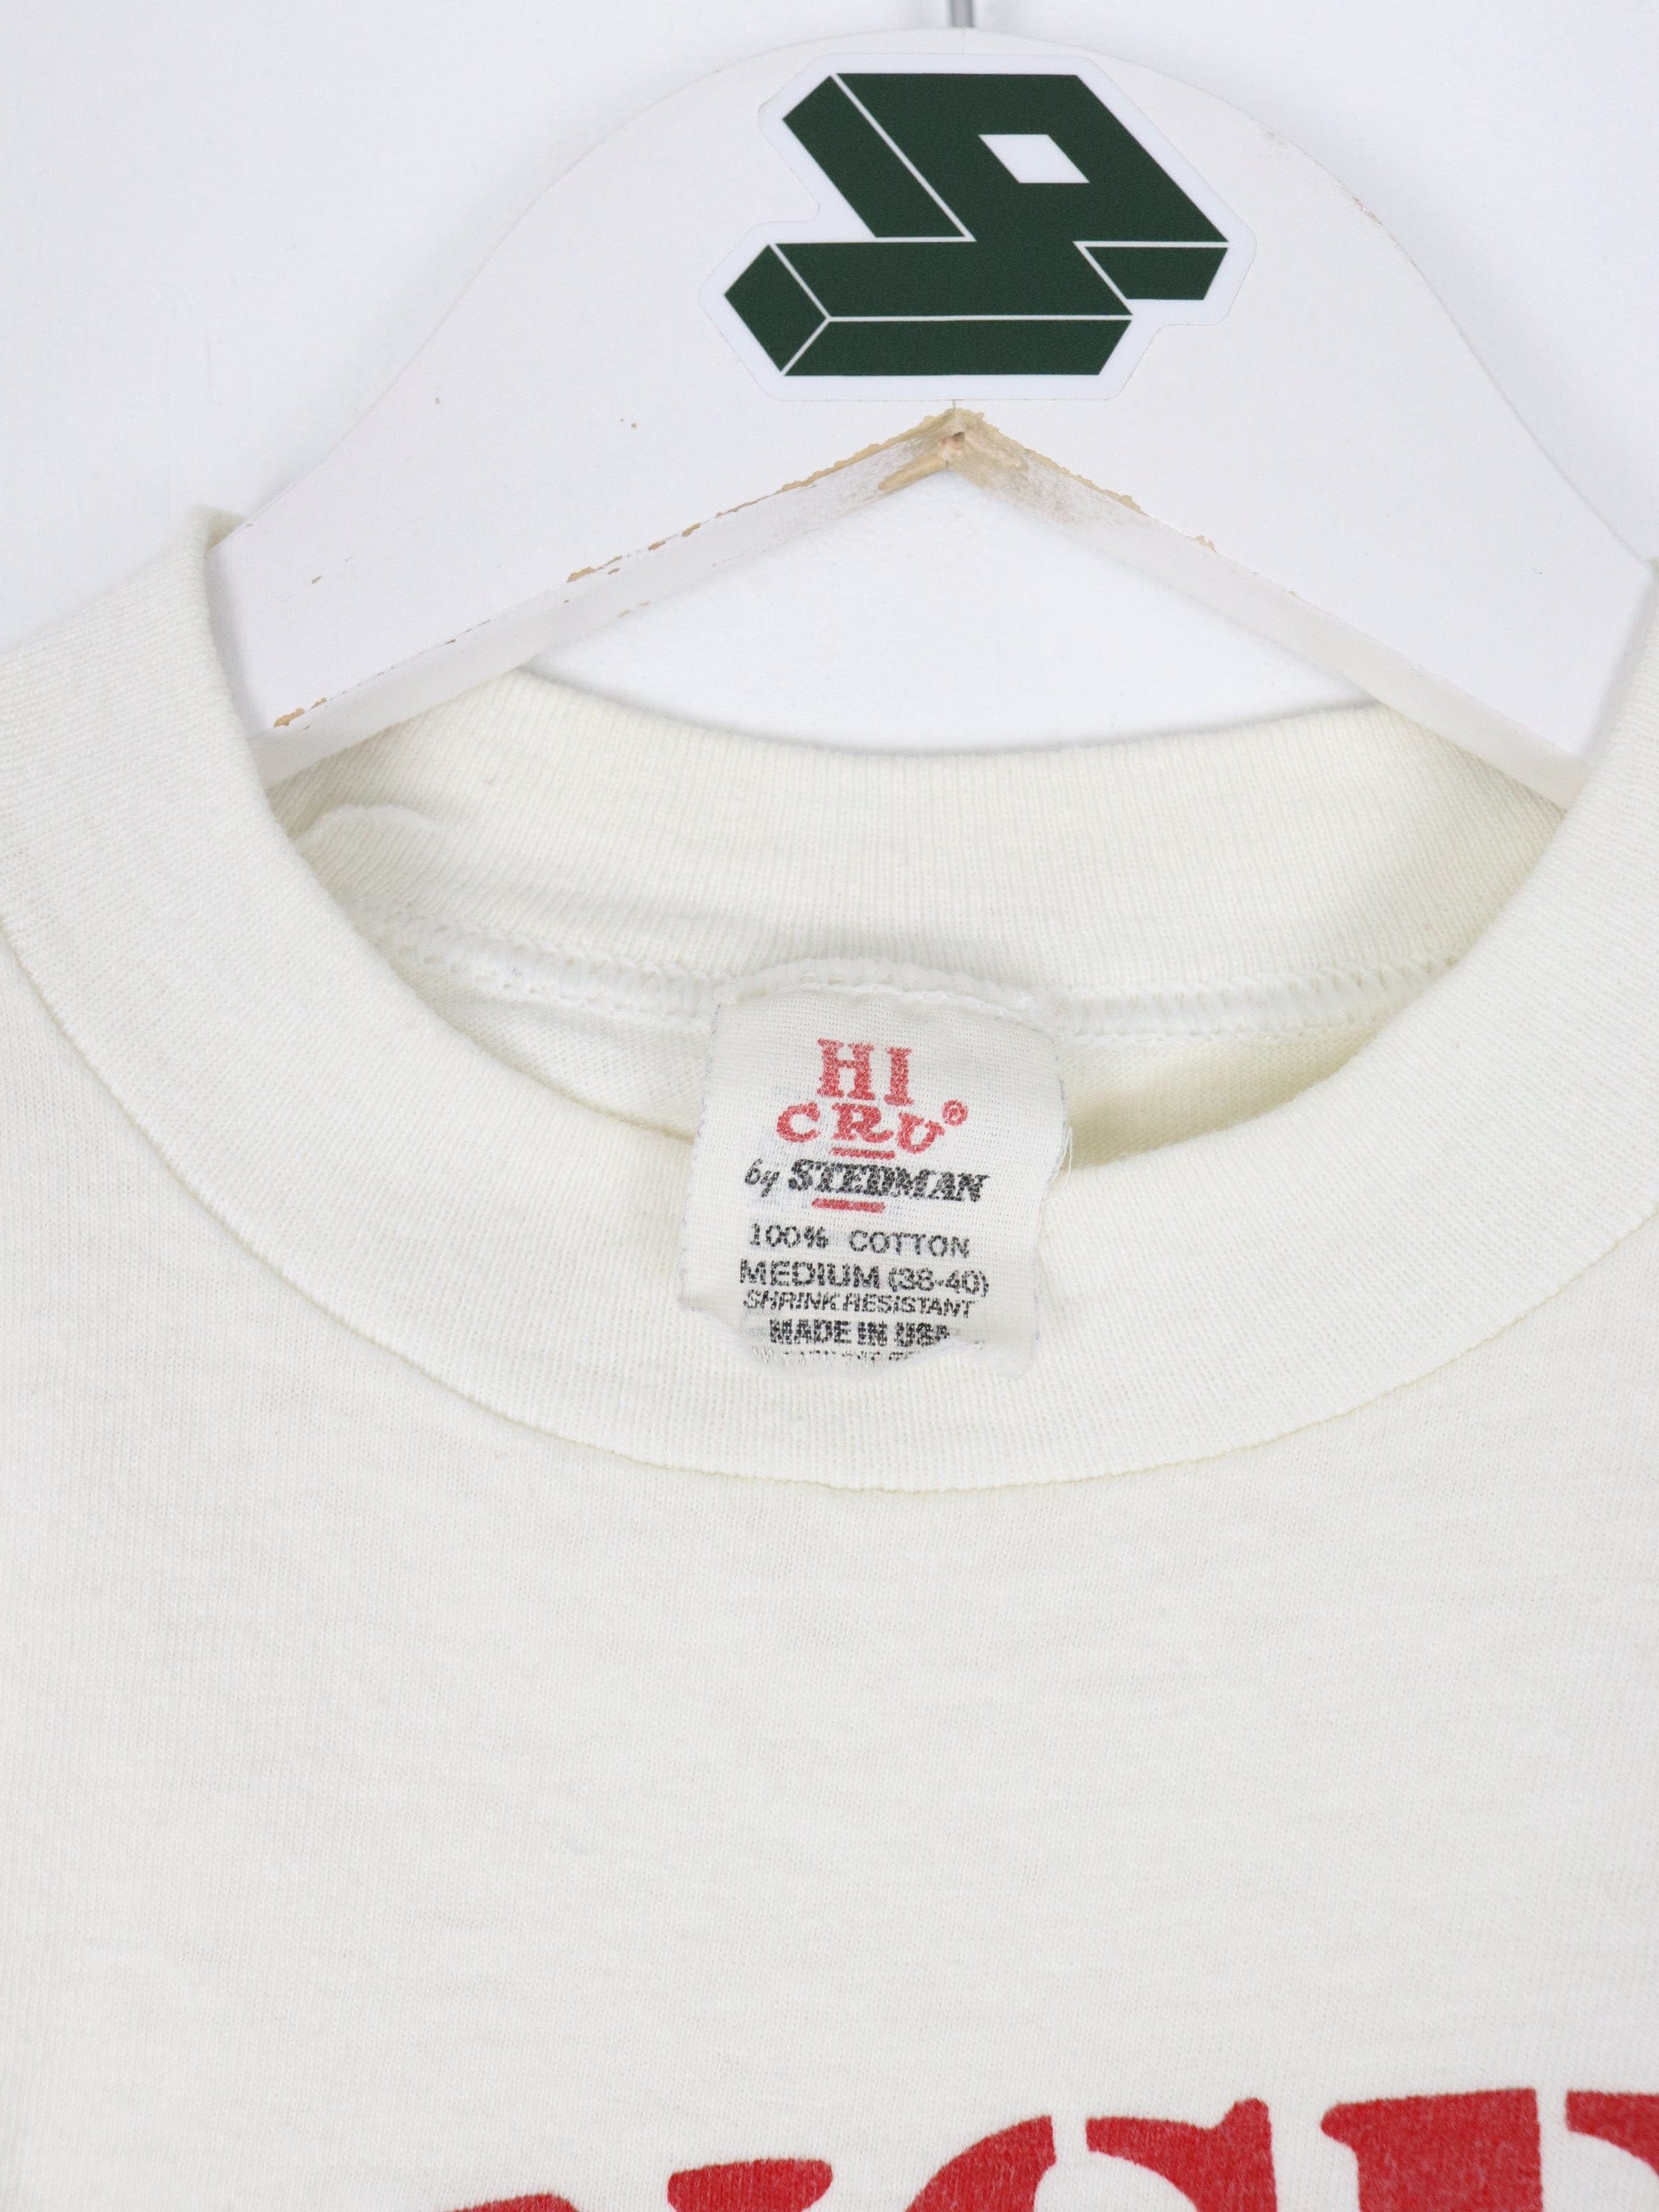 80s 1984 Chicago Cubs Fever Vintage Ringer Tee T-shirt White 